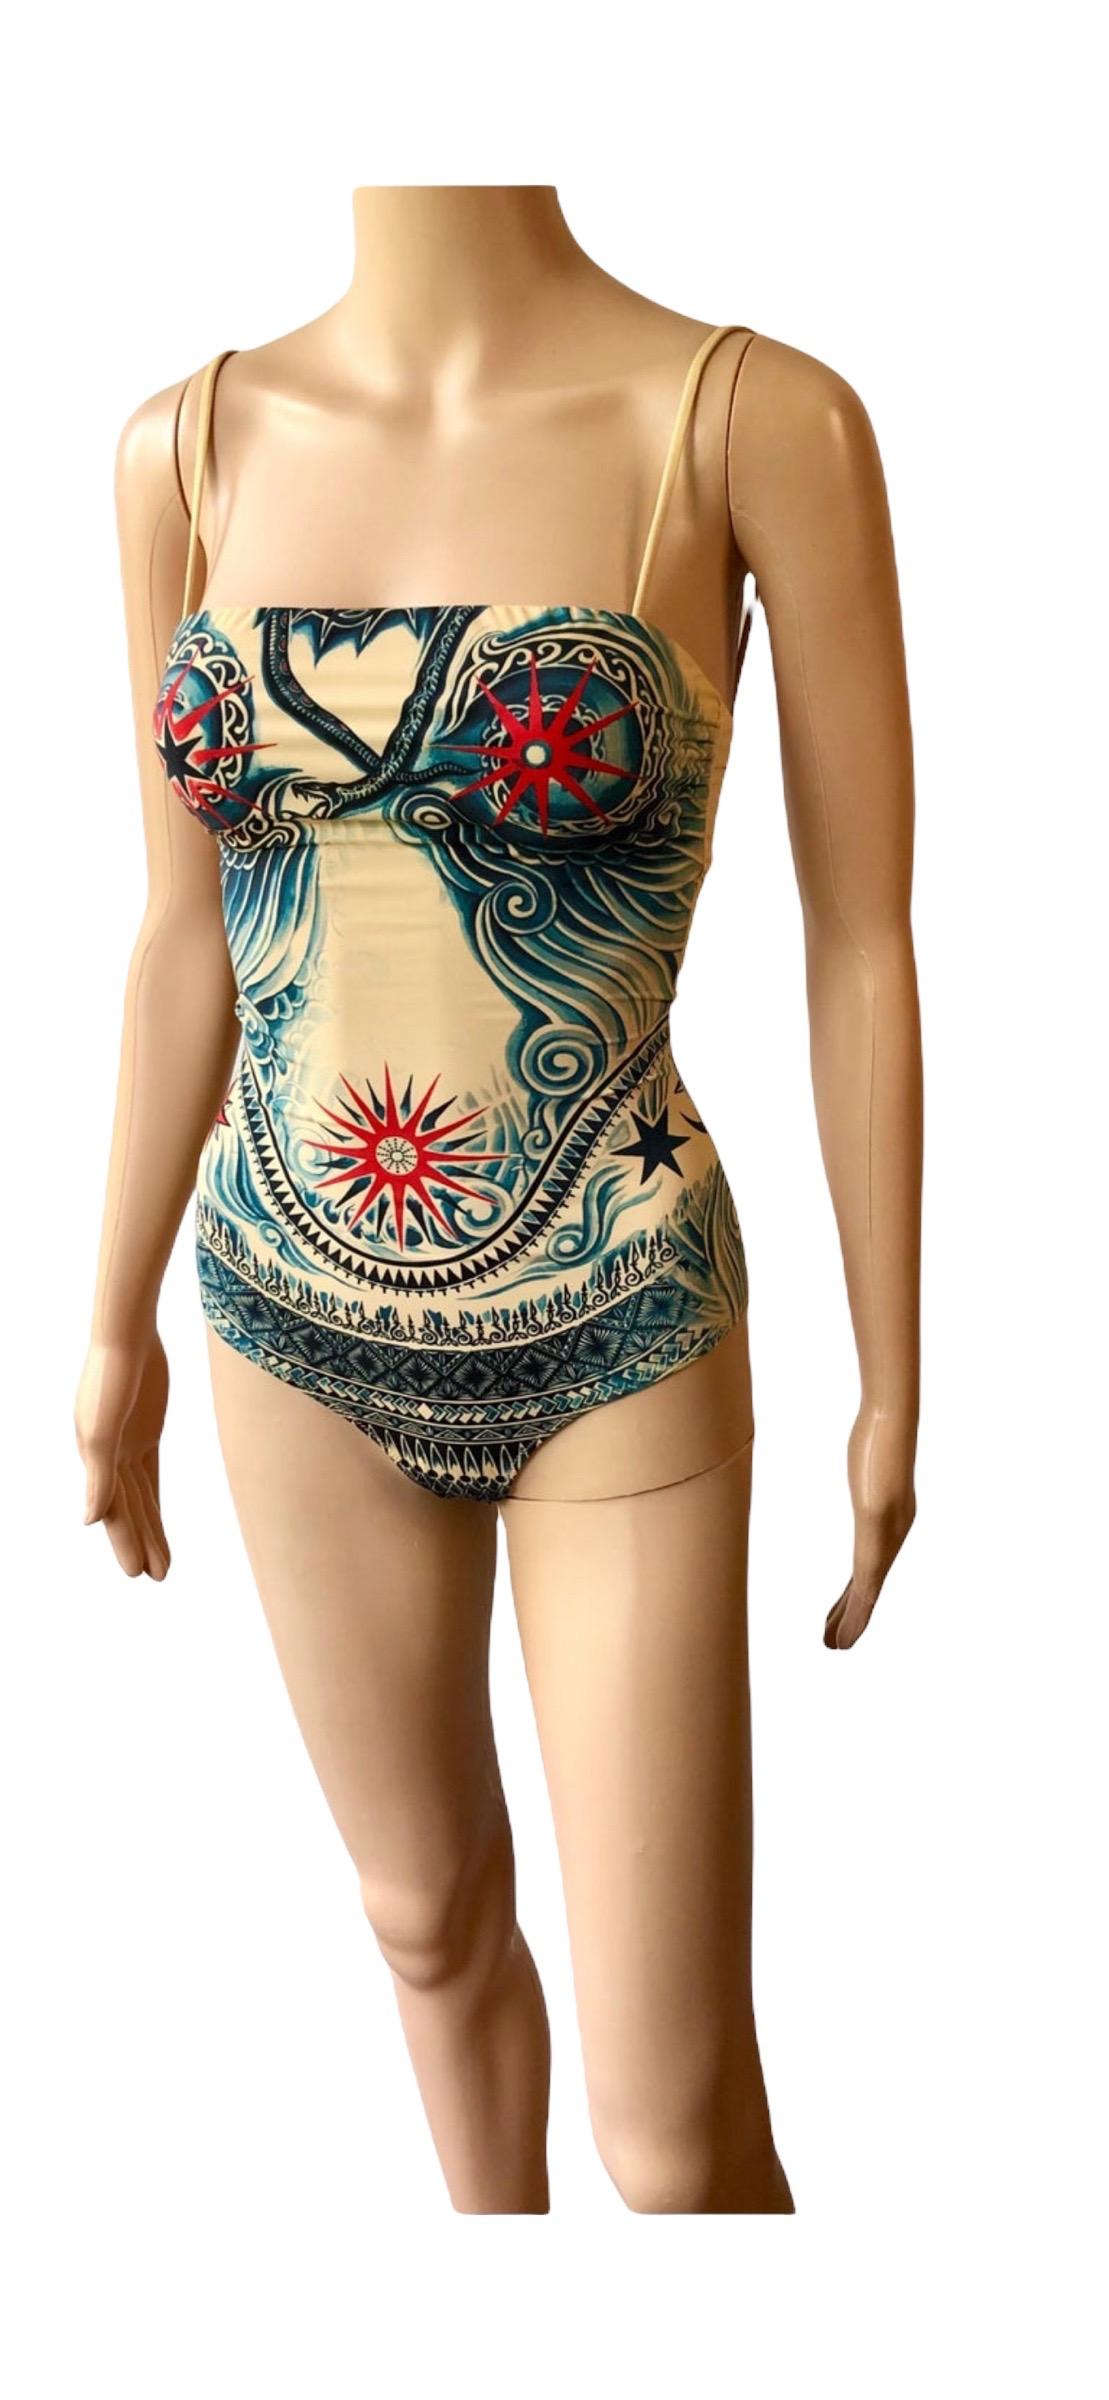 Jean Paul Gaultier Soleil Tattoo Print Bodysuit Swimwear Swimsuit 1